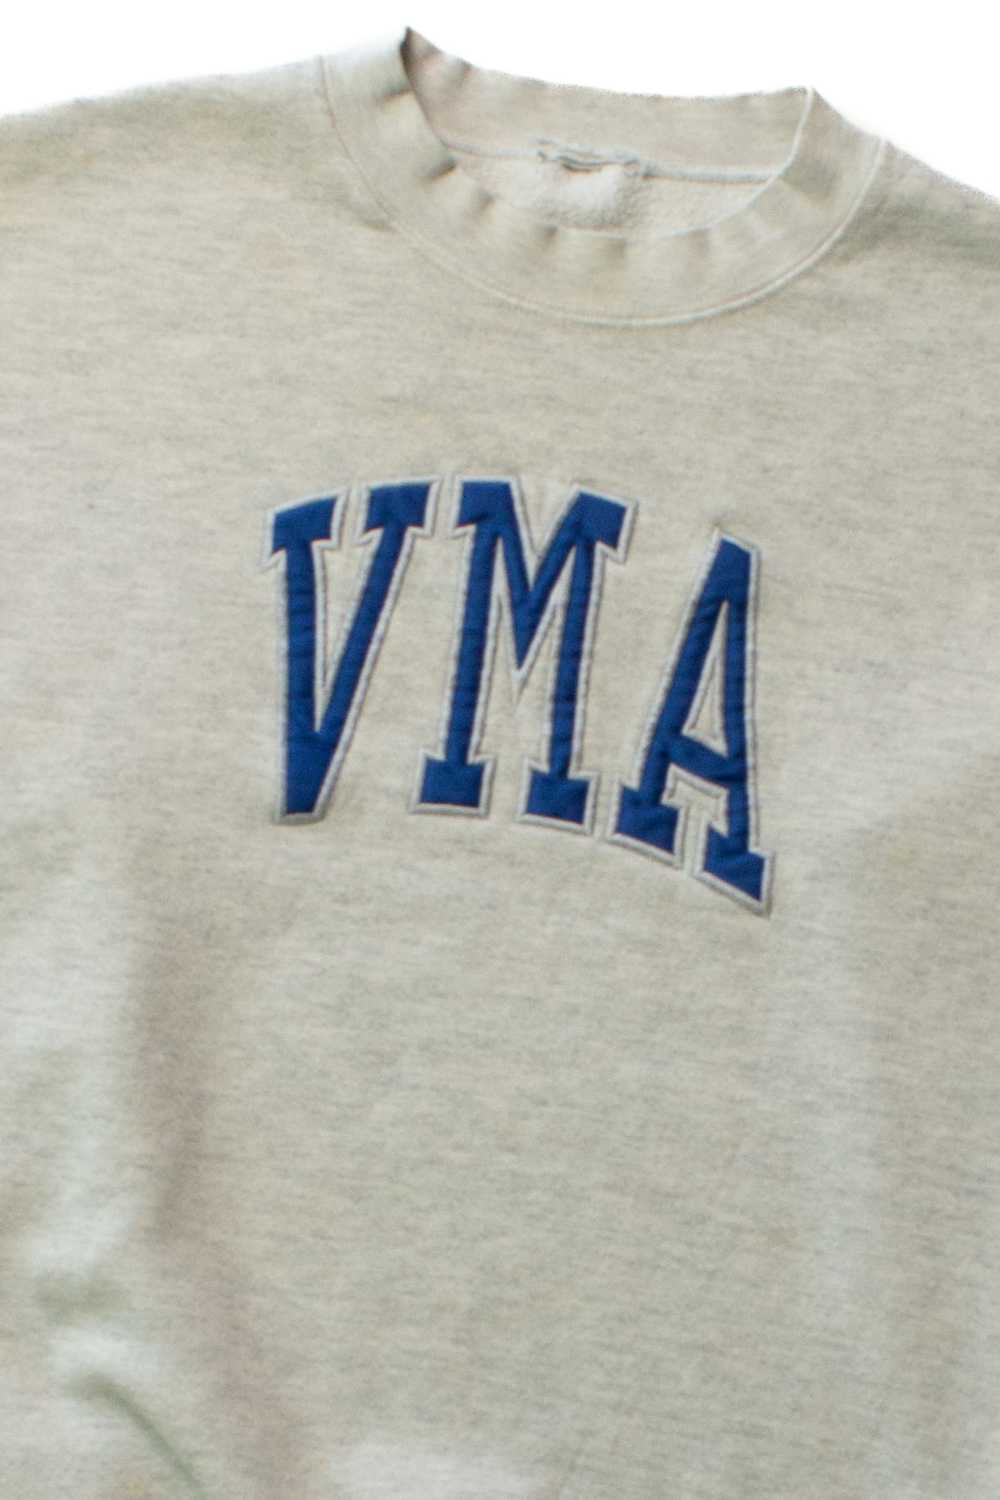 Vintage VMA Sweatshirt (1990s) - image 2